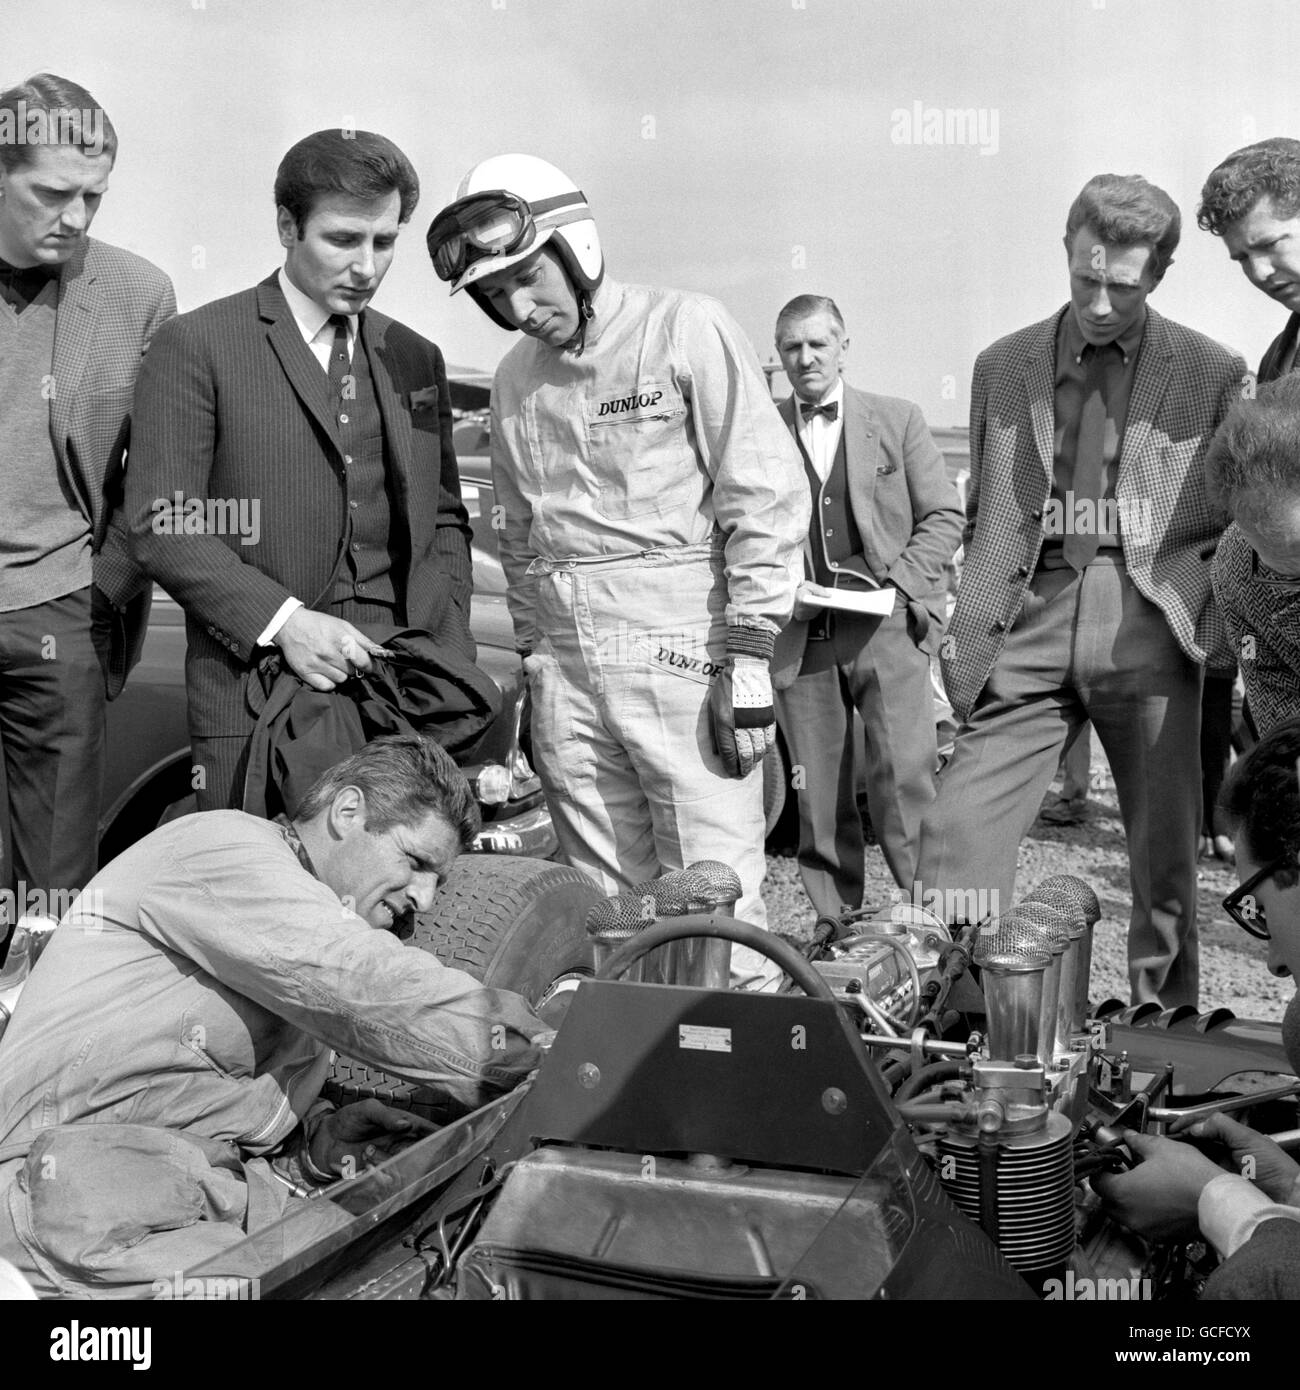 Il pilota campione del mondo John Surtees guarda un rapido cambio di spina effettuato sulla sua Ferrari prima dello start della prima parte delle due parti Race of Champions per le vetture internazionali di Formula 1 sul circuito Brands Hatch, vicino a Swanley. I Surtees hanno concluso sesto in questa parte della gara. Foto Stock